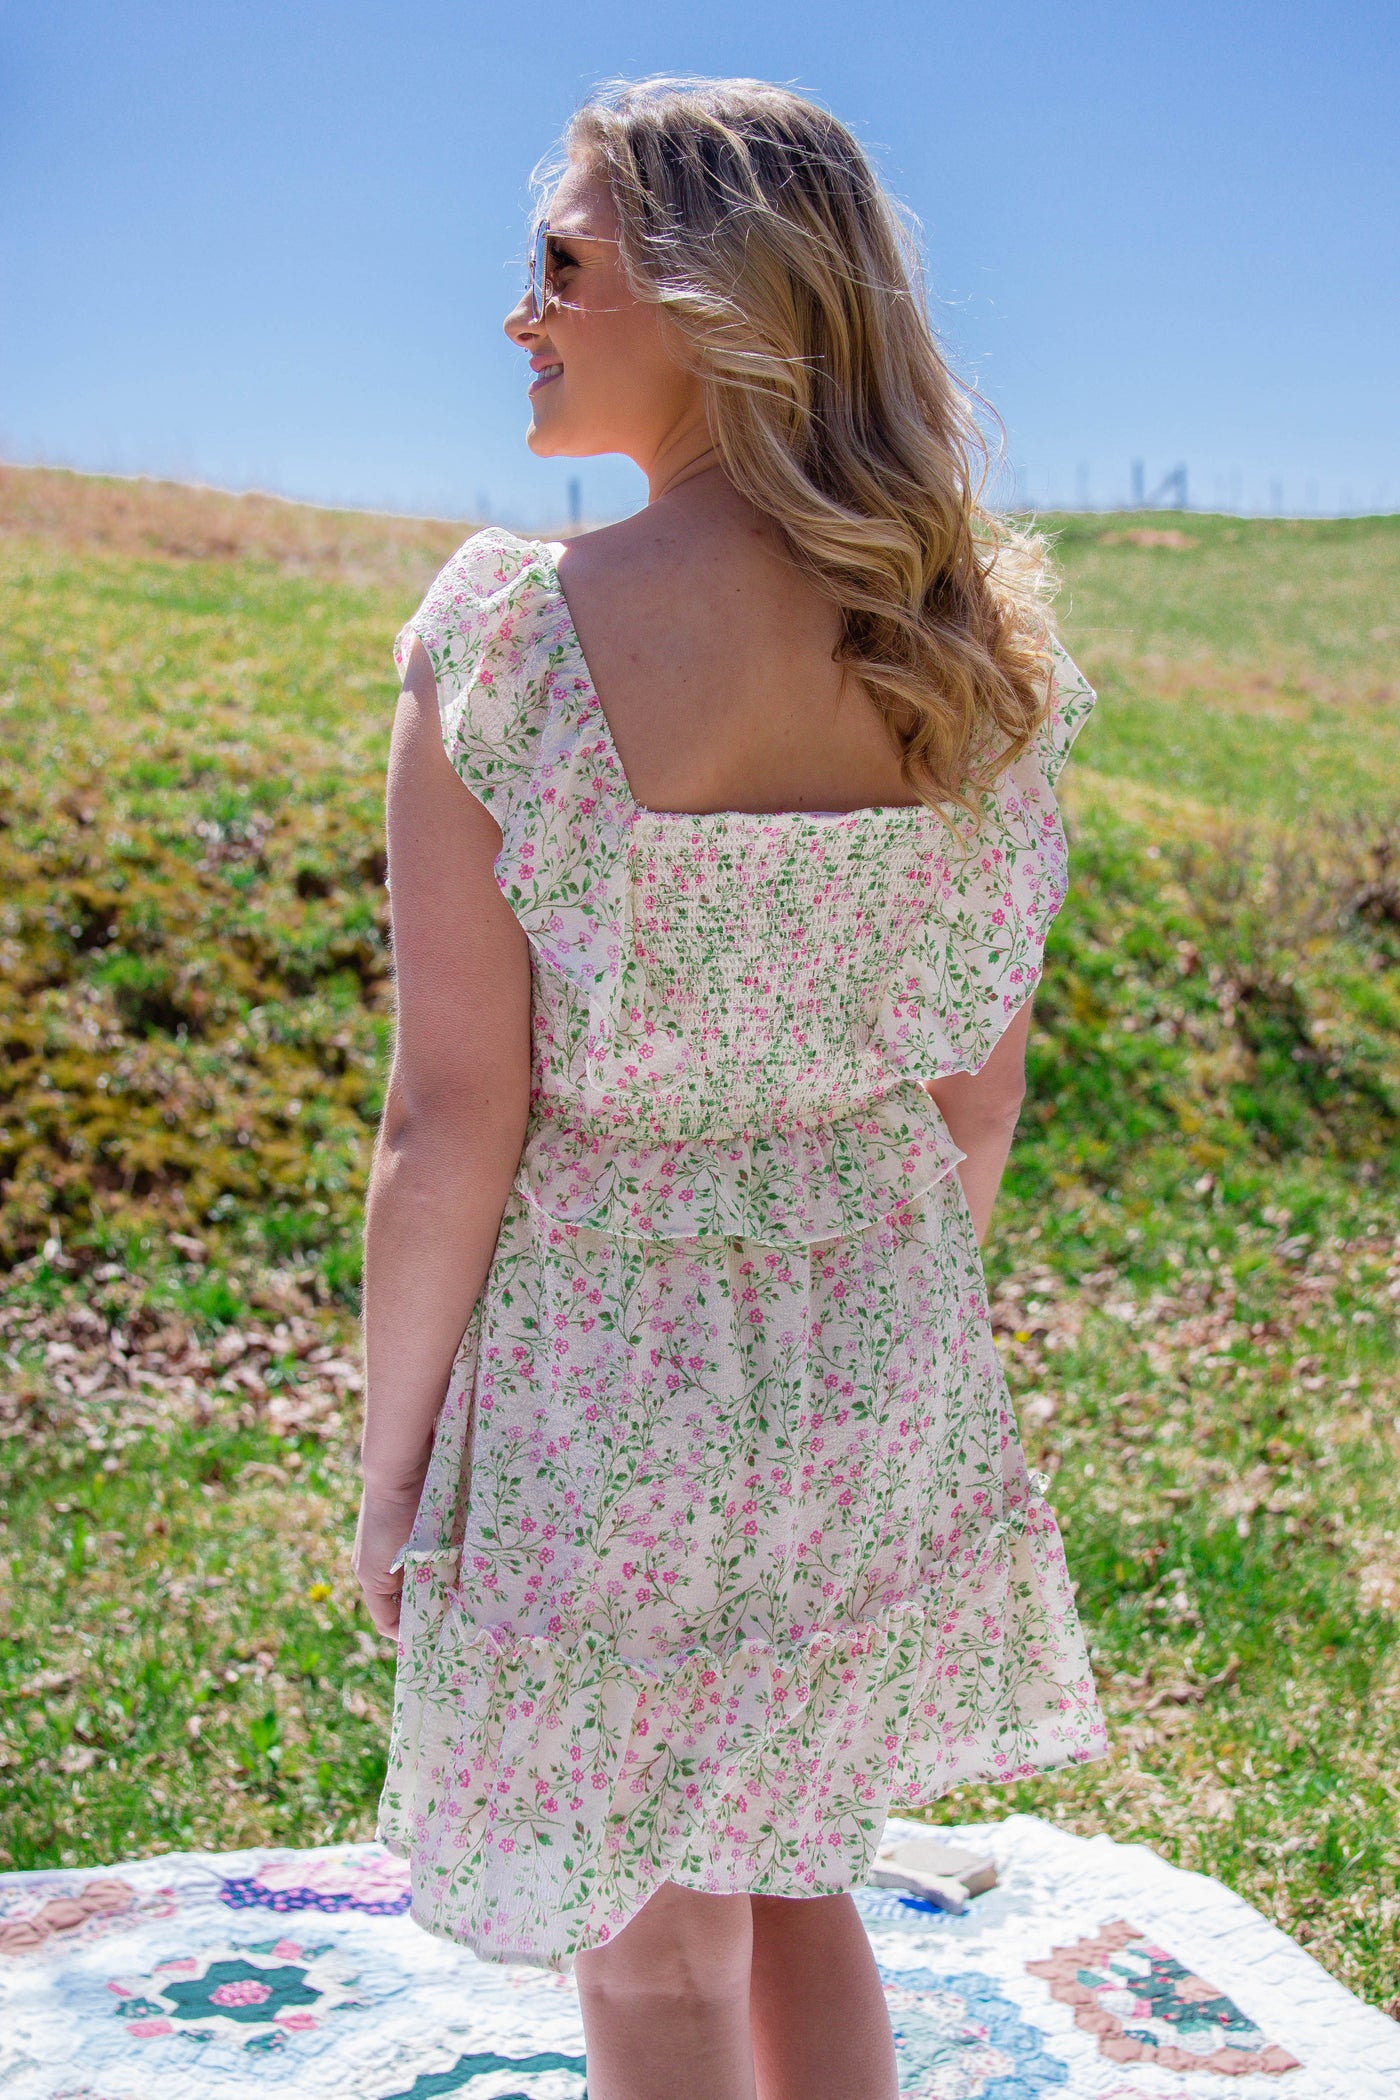 Sweet Floral Print Dress- Feminine Dresses- Tiered Ruffle Floral Print Mini Dress